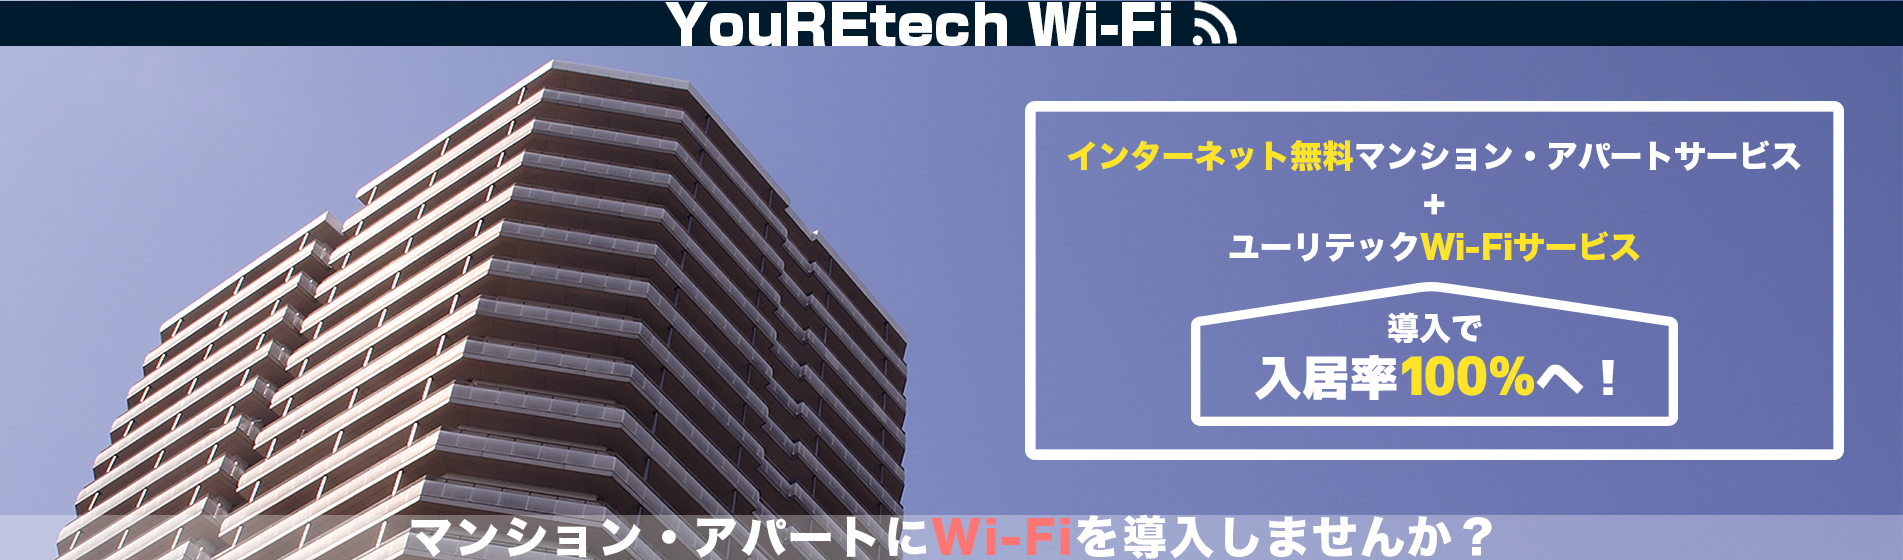 YouREtech Wi-Fi